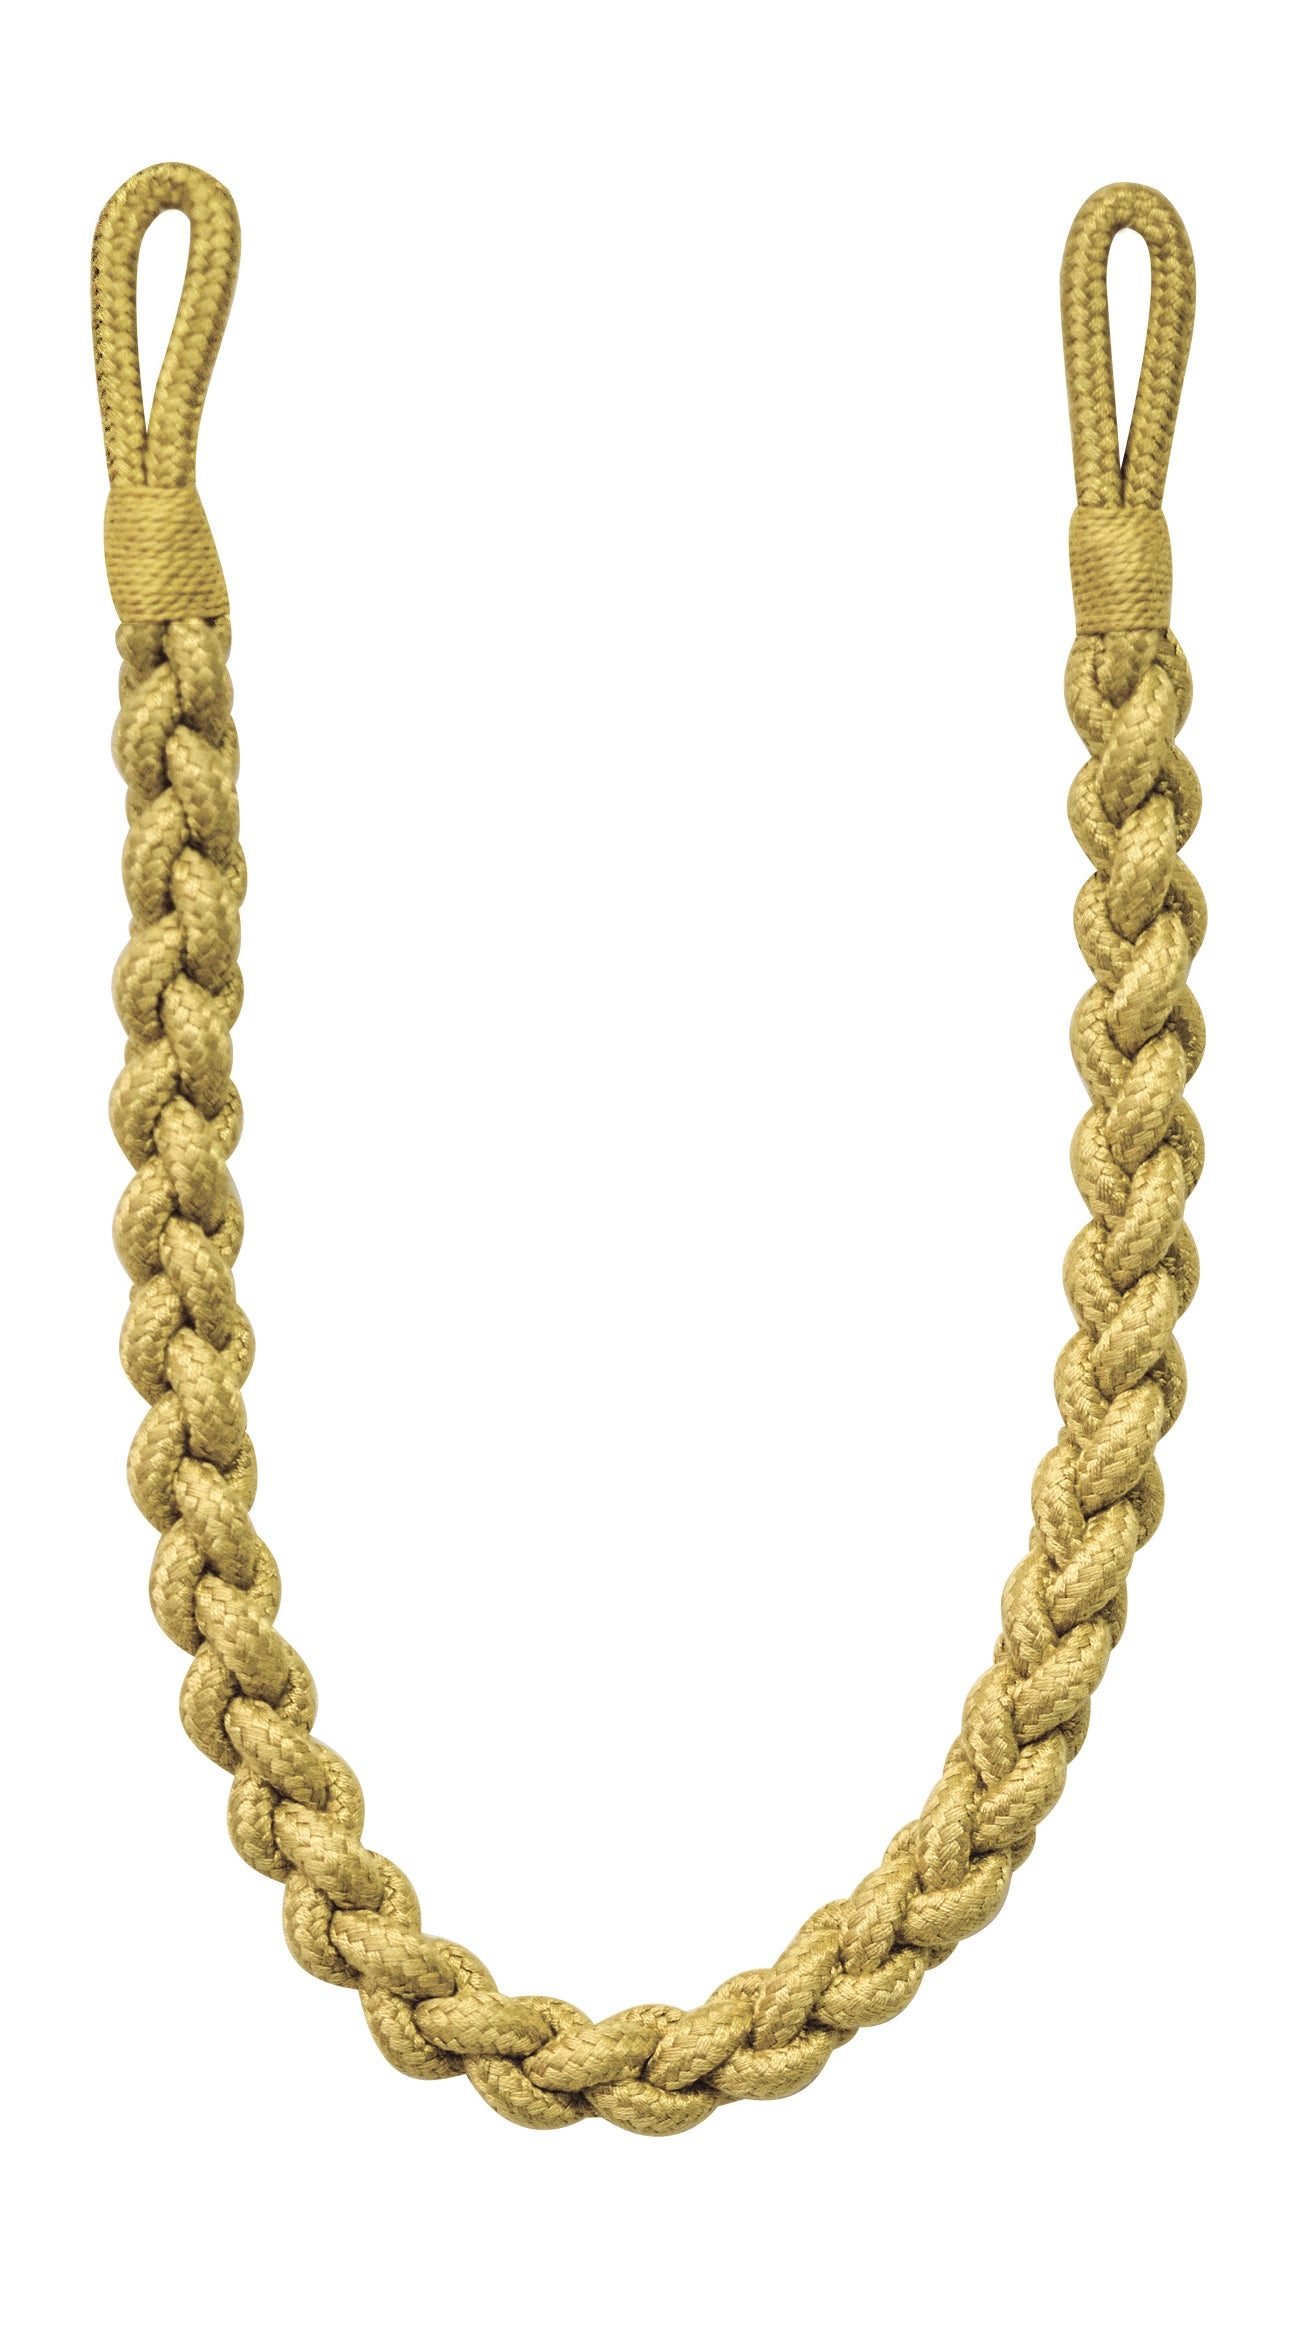 Pair of Braided Brampton Tie Back Ropes - 840mm Long